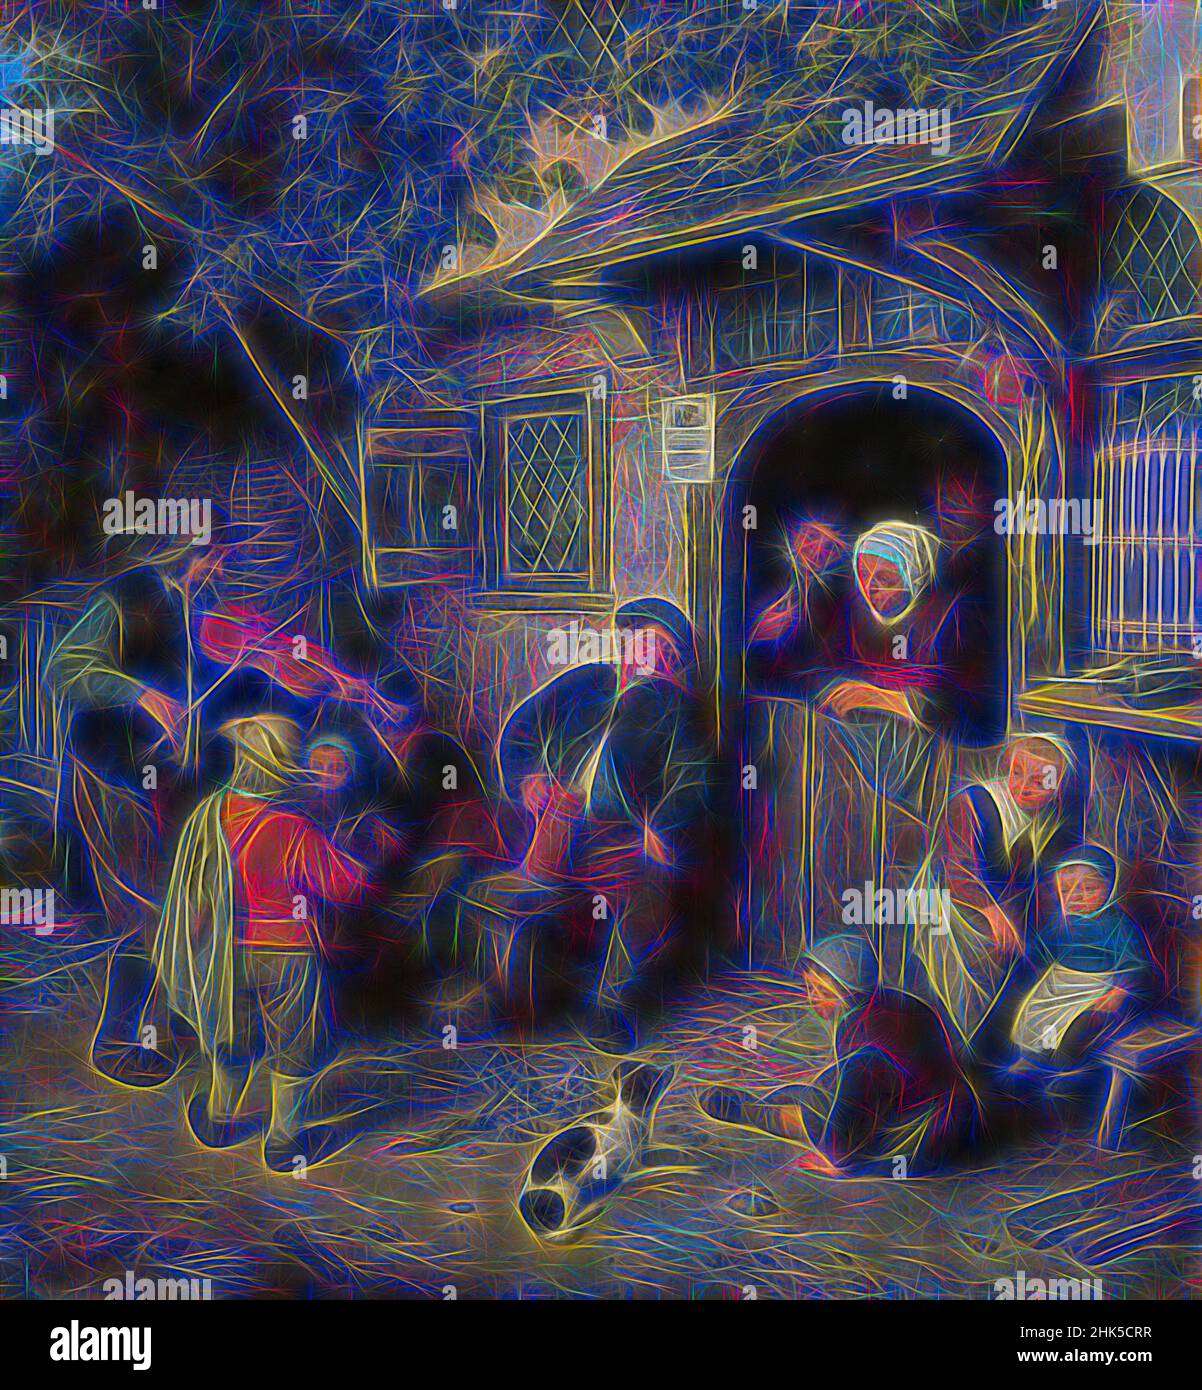 Inspiriert von dem Violinspieler Adriaen van Ostade, 1673, neu erfunden von Artotop. Klassische Kunst neu erfunden mit einem modernen Twist. Design von warmen fröhlichen Leuchten der Helligkeit und Lichtstrahl Strahlkraft. Fotografie inspiriert von Surrealismus und Futurismus, umarmt dynamische Energie der modernen Technologie, Bewegung, Geschwindigkeit und Kultur zu revolutionieren Stockfoto